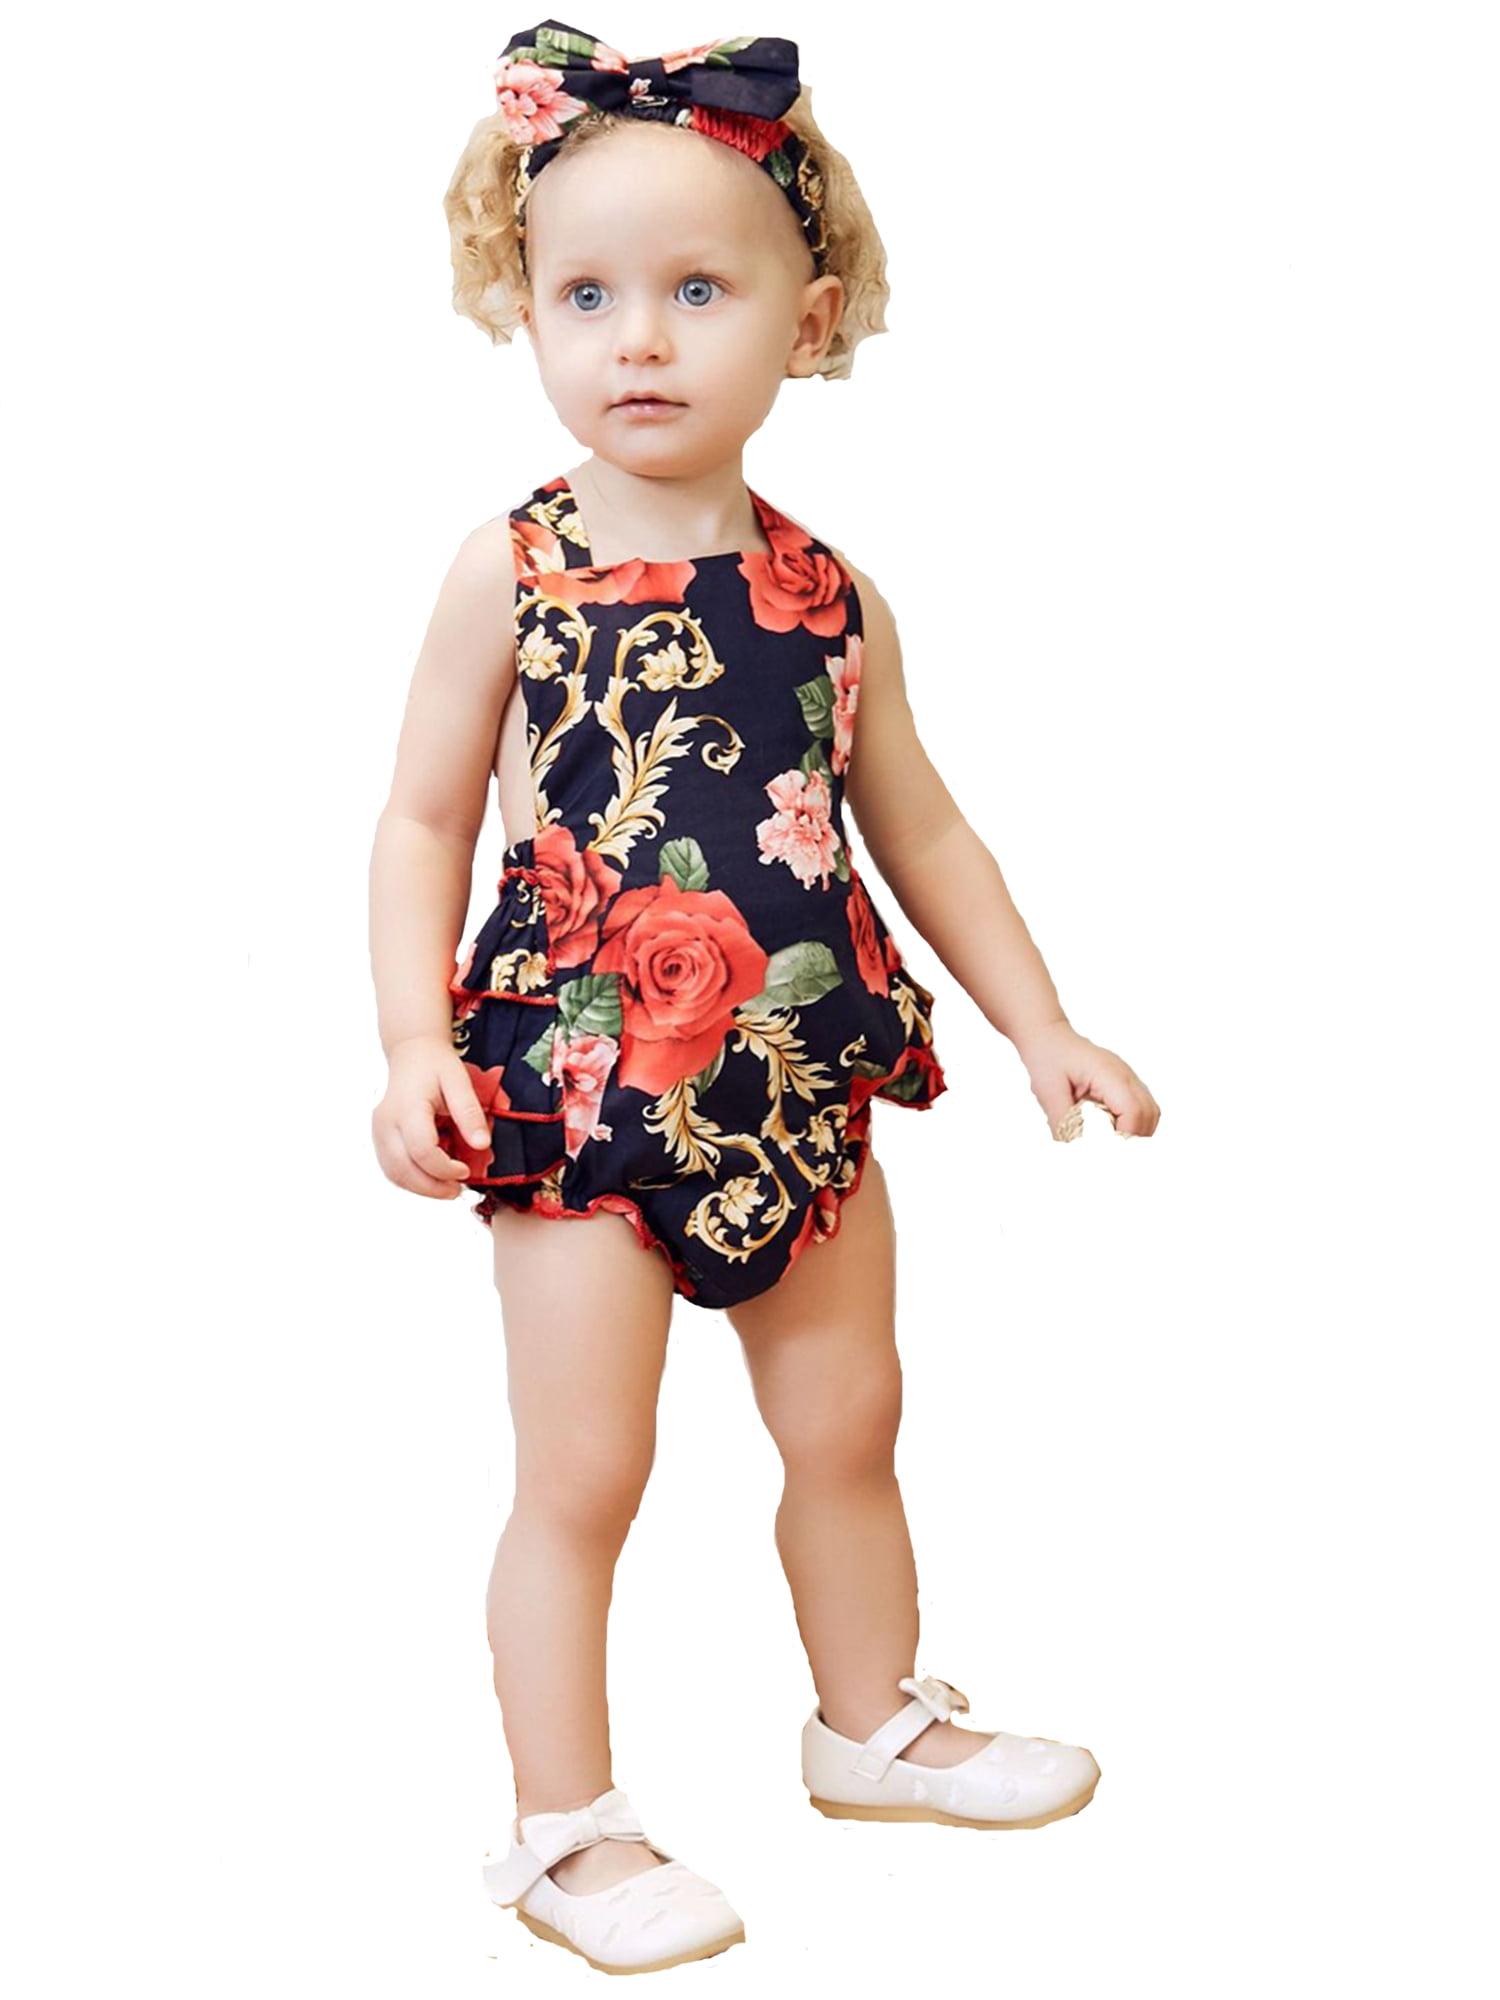 Newborn Infant Baby Girl Floral Bodysuit Romper Jumpsuit Outfits Sunsuit Clothes 